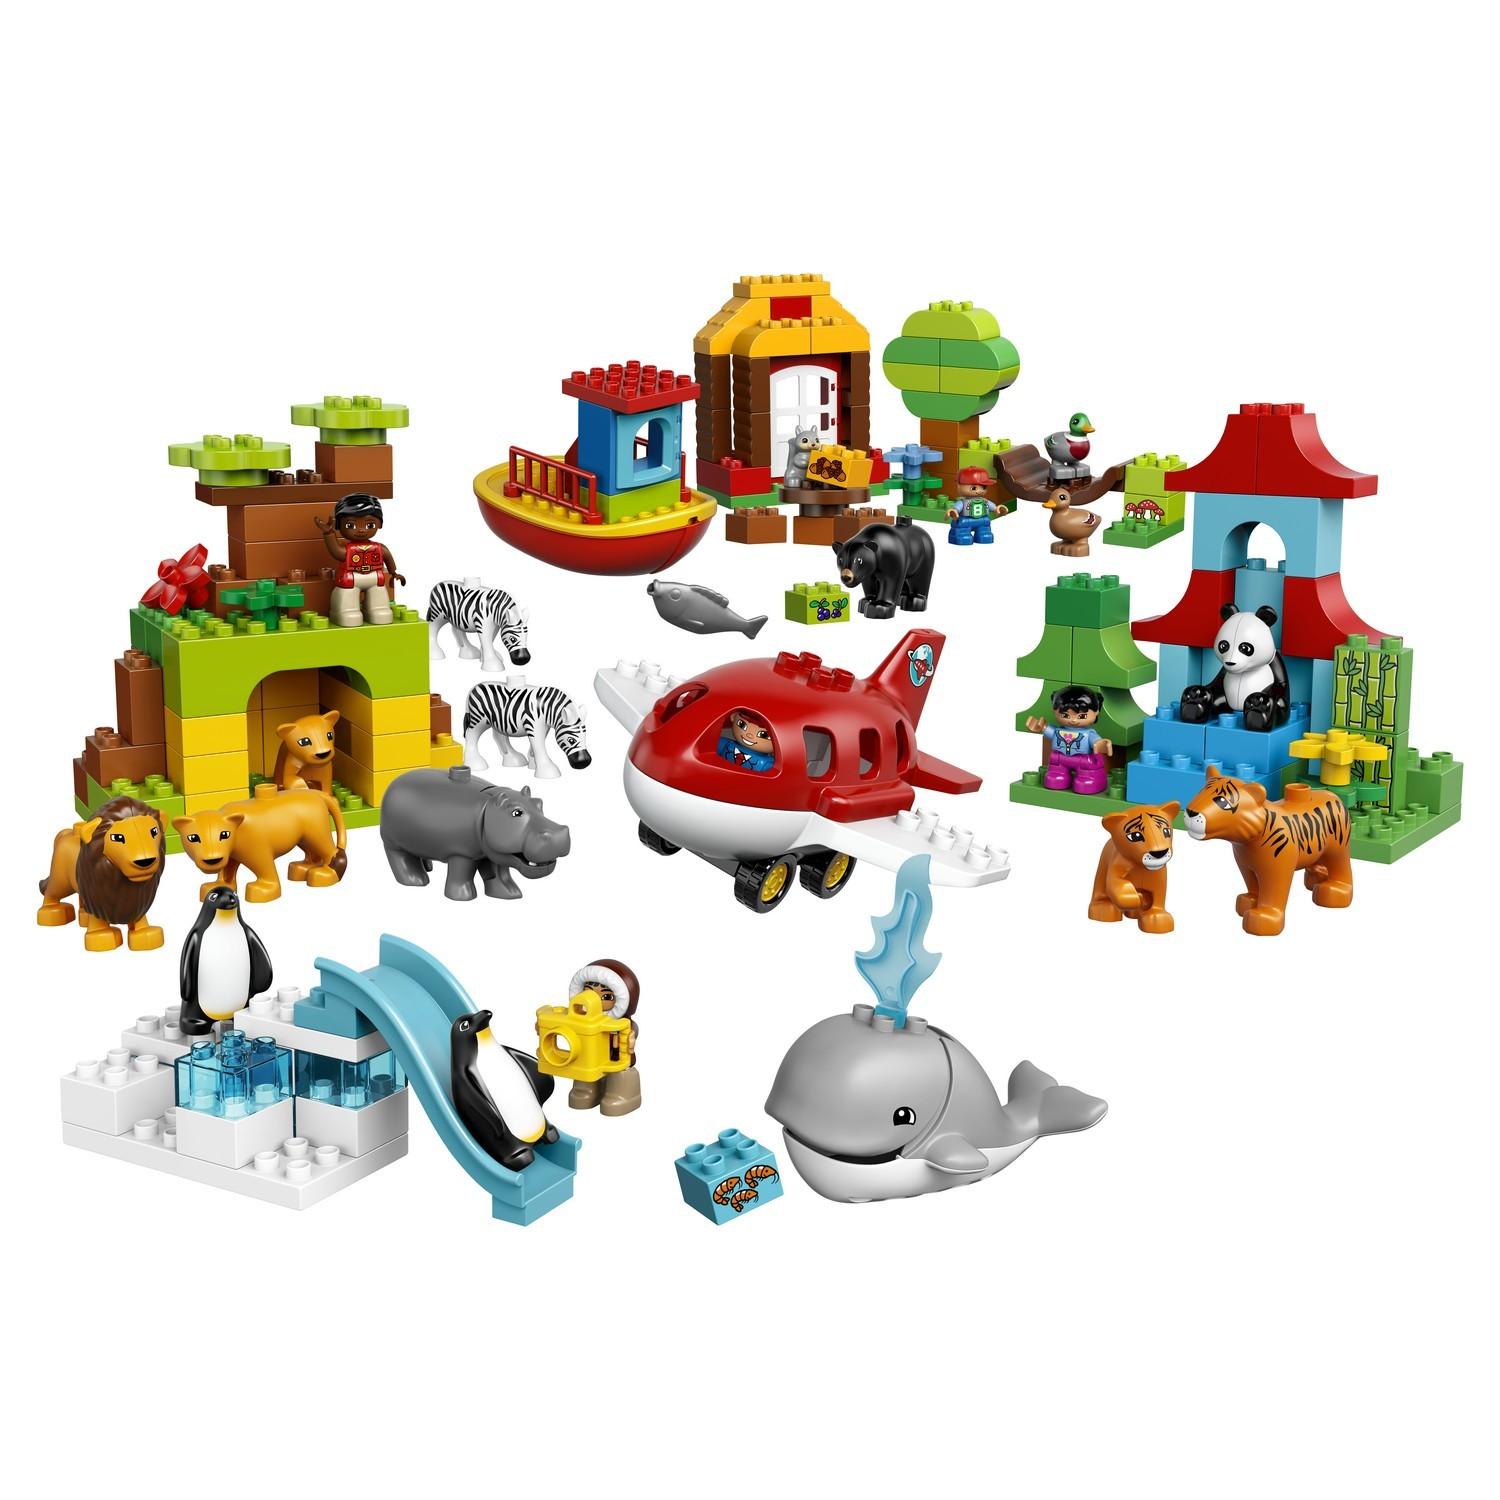 Lego Duplo 10805 Вокруг света: В мире животных